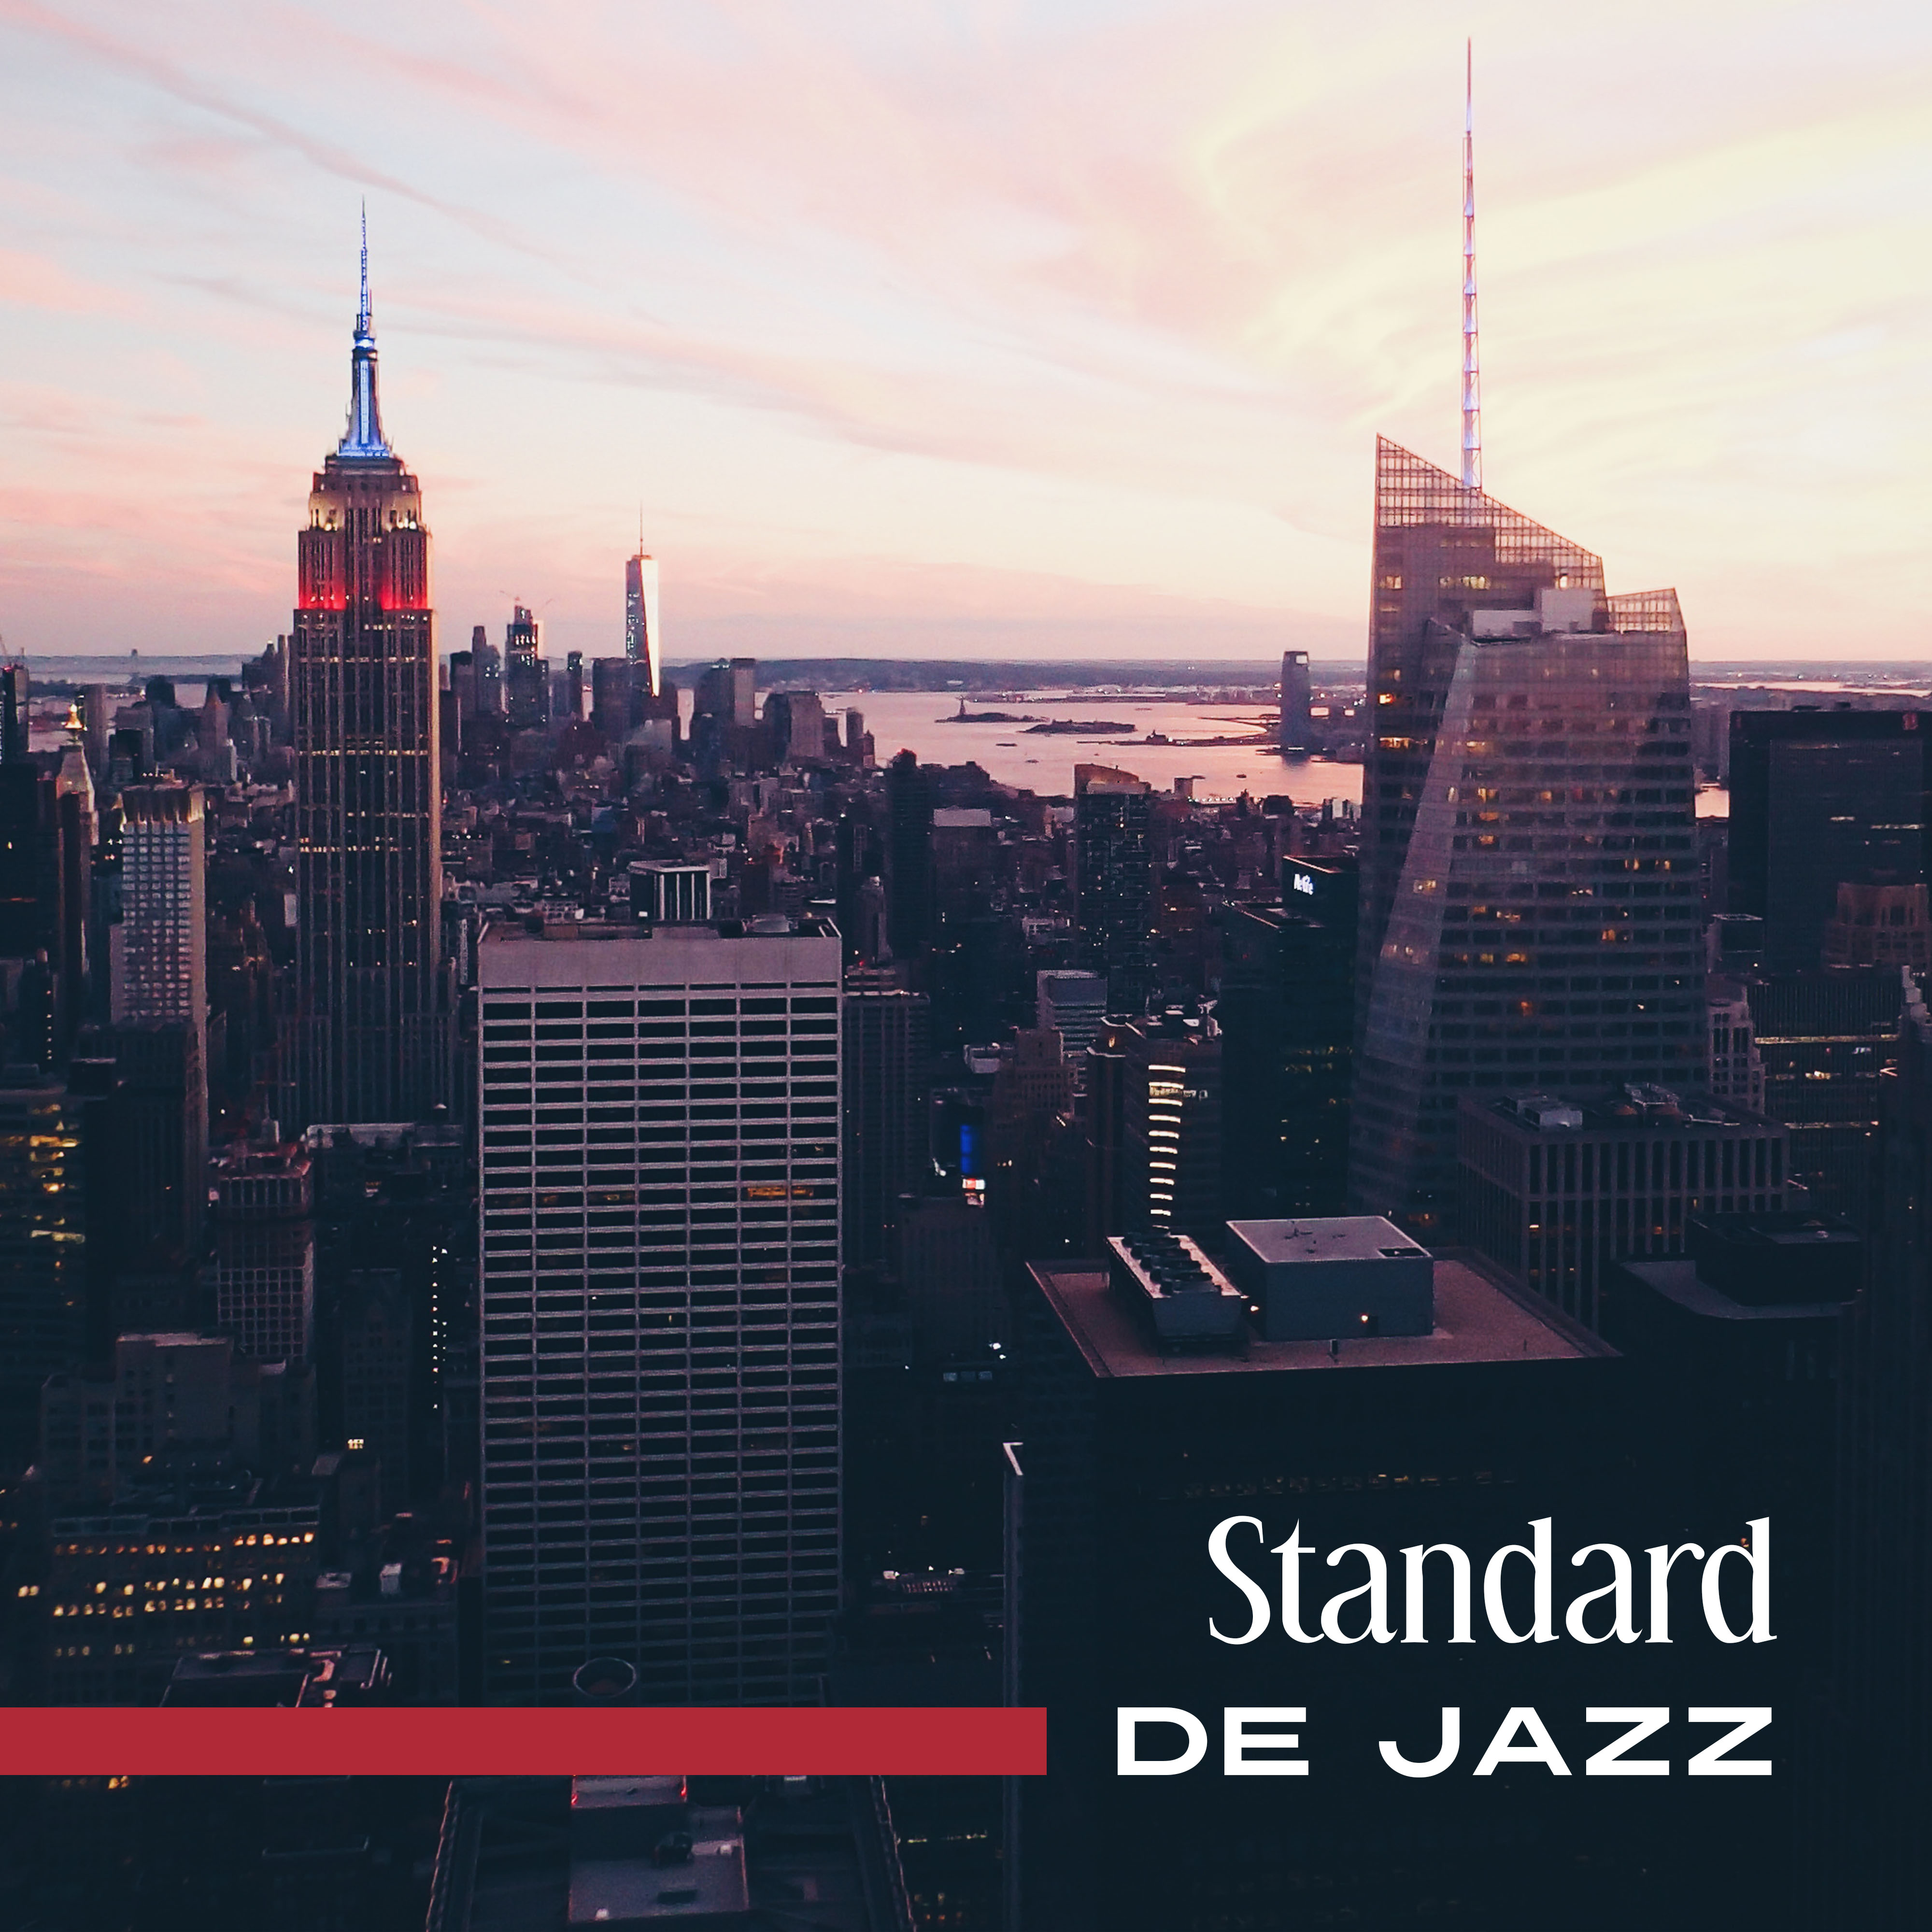 Standard de jazz - Piano bar jazz,  musique d'ambience pour des clubs de jazz